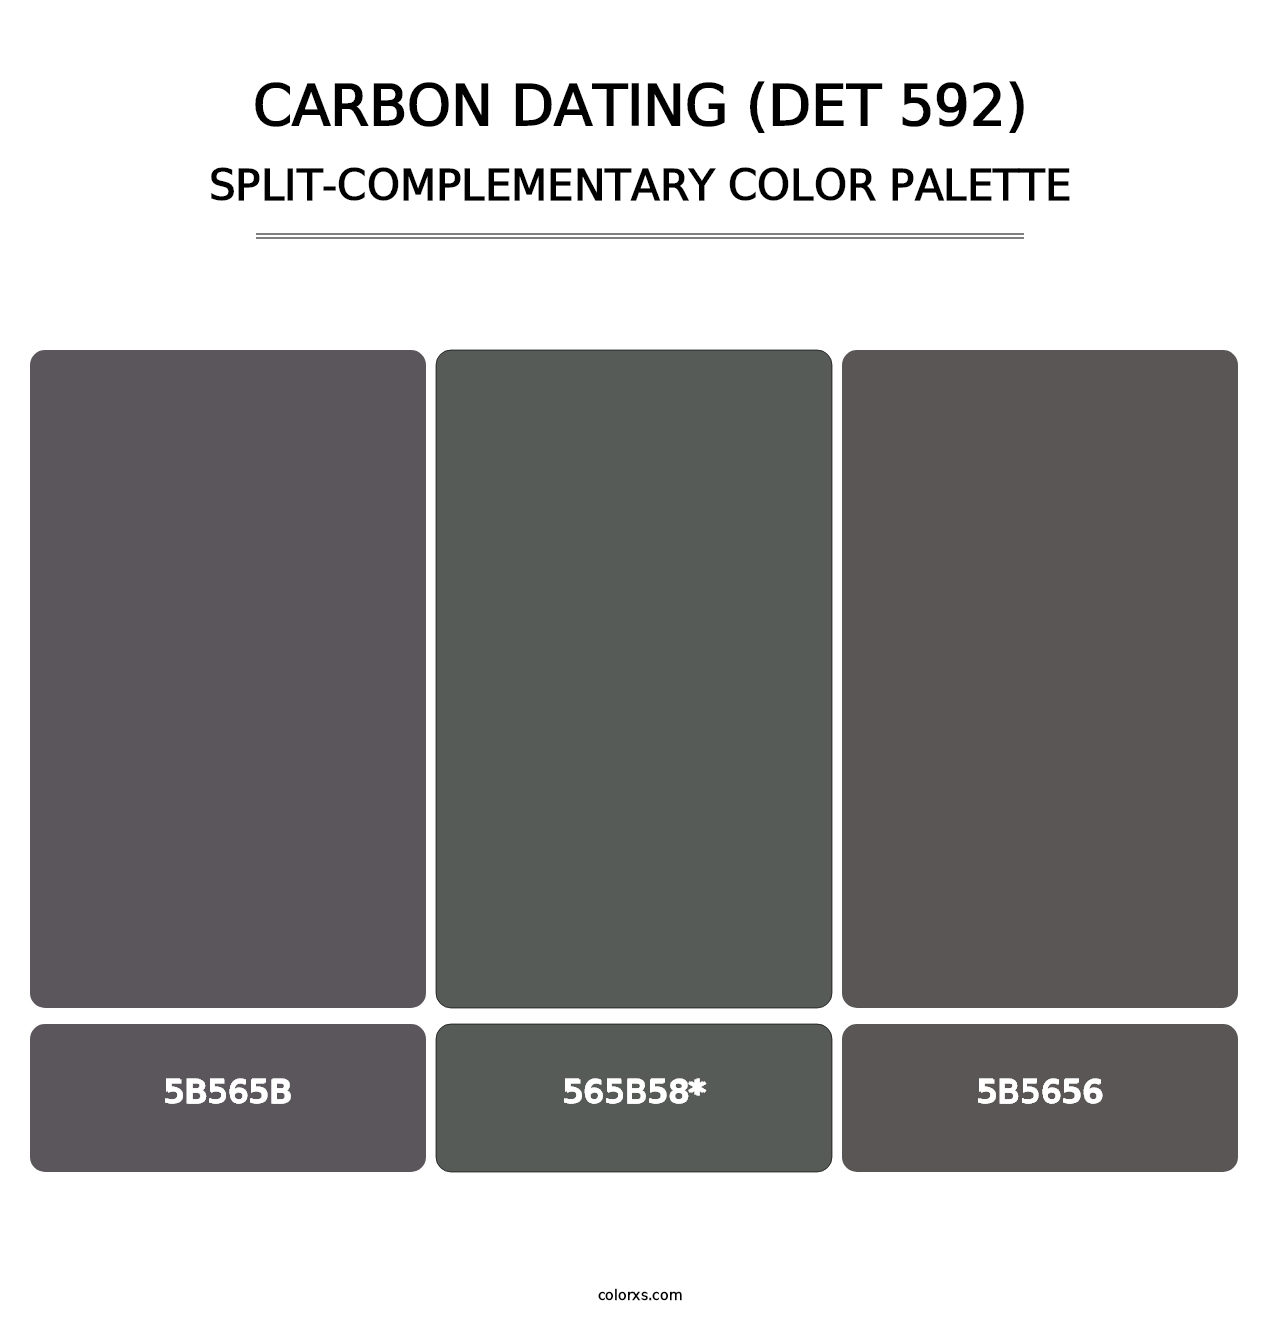 Carbon Dating (DET 592) - Split-Complementary Color Palette